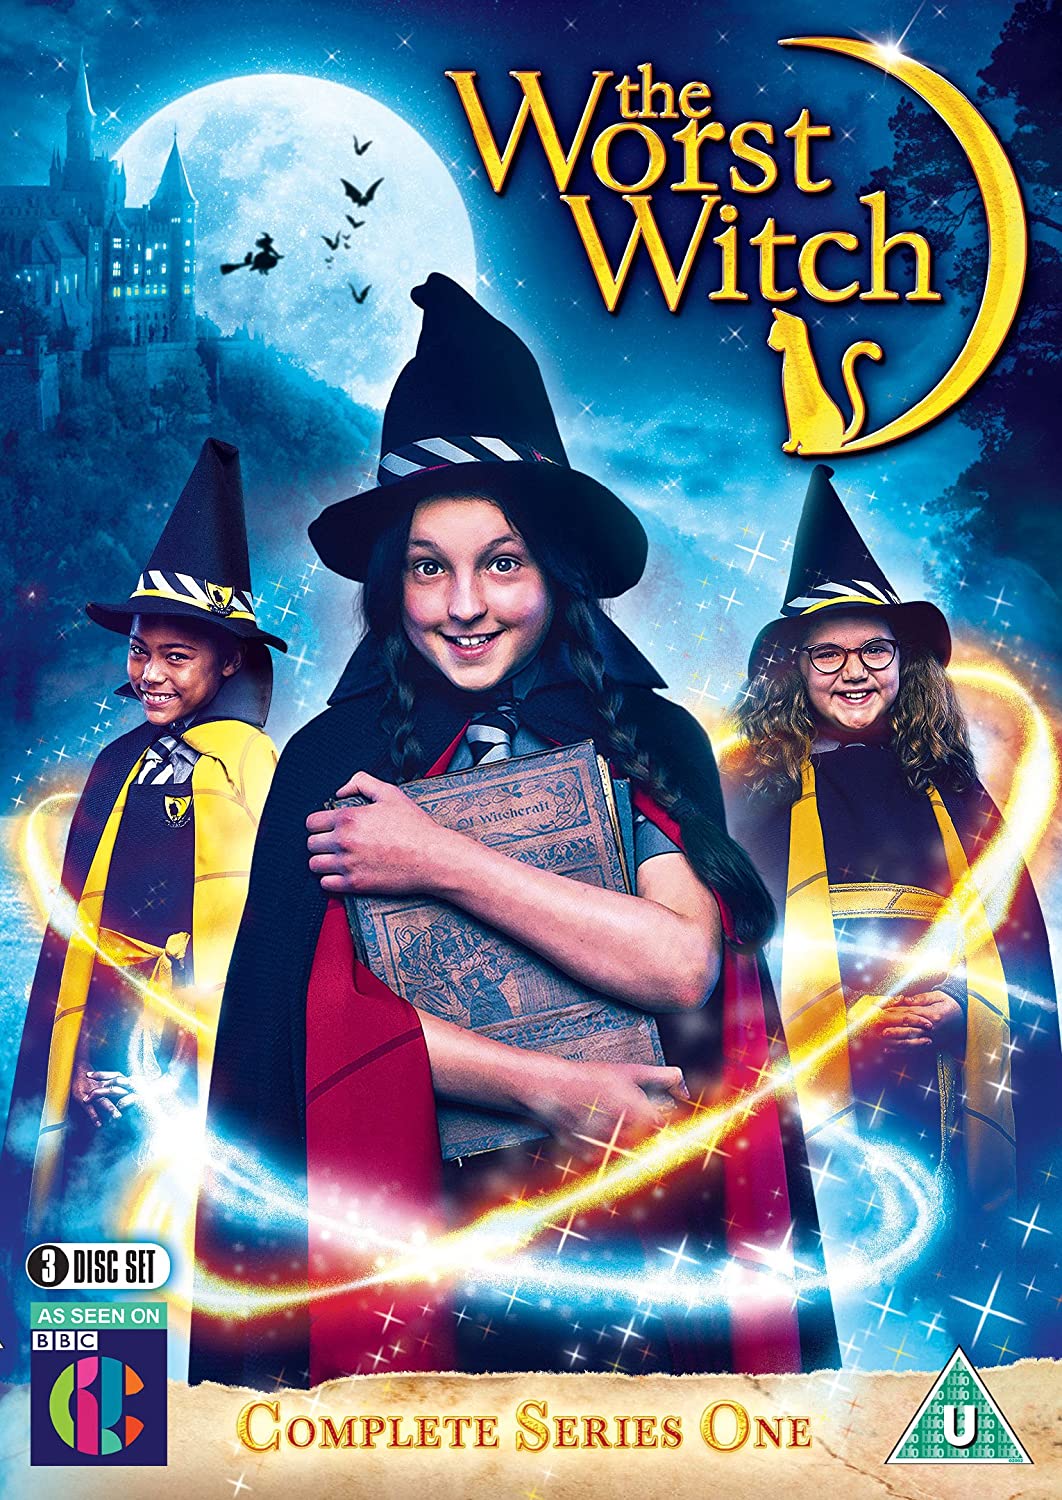 ดูหนังออนไลน์ฟรี The Worst Witch Season 3 (2019) โอมเพี้ยง! แม่มดน้อยสู้ตาย ซีซั่น 3 ตอนที่ 10